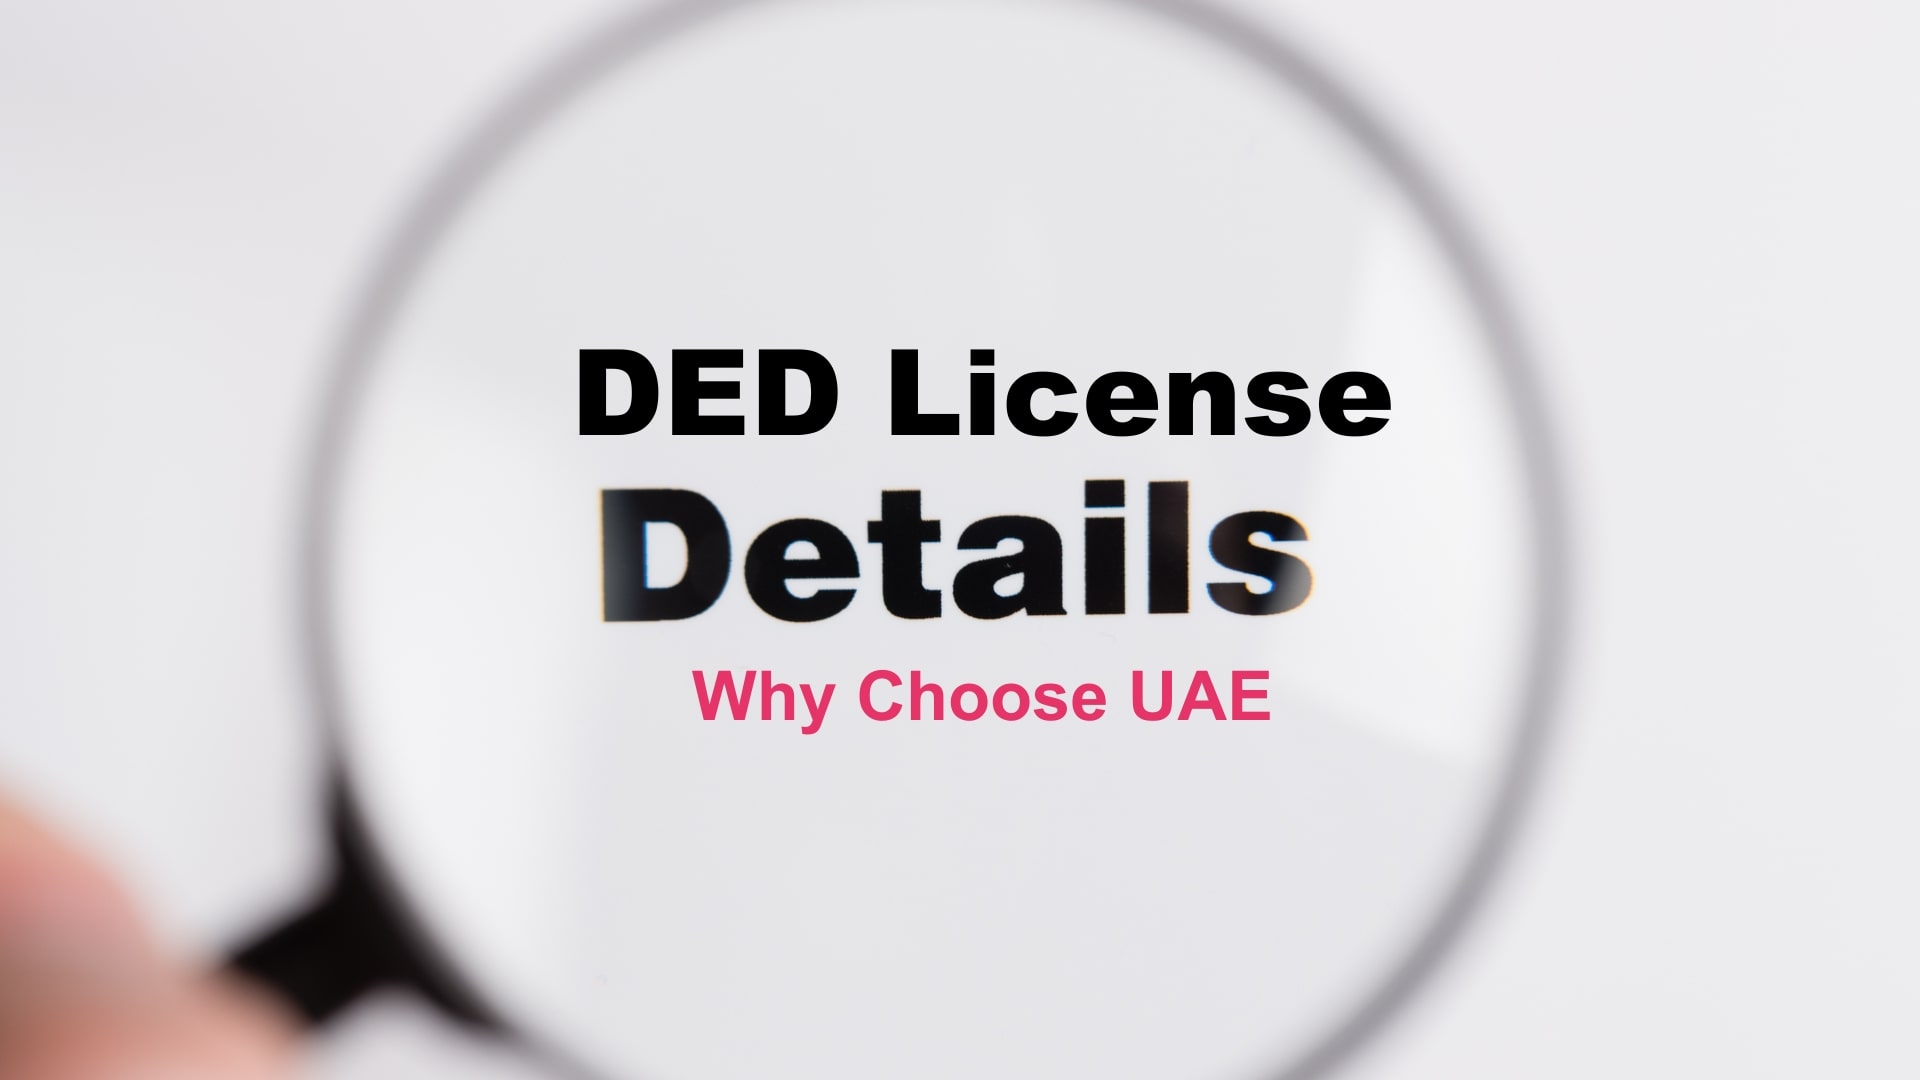 ded license details